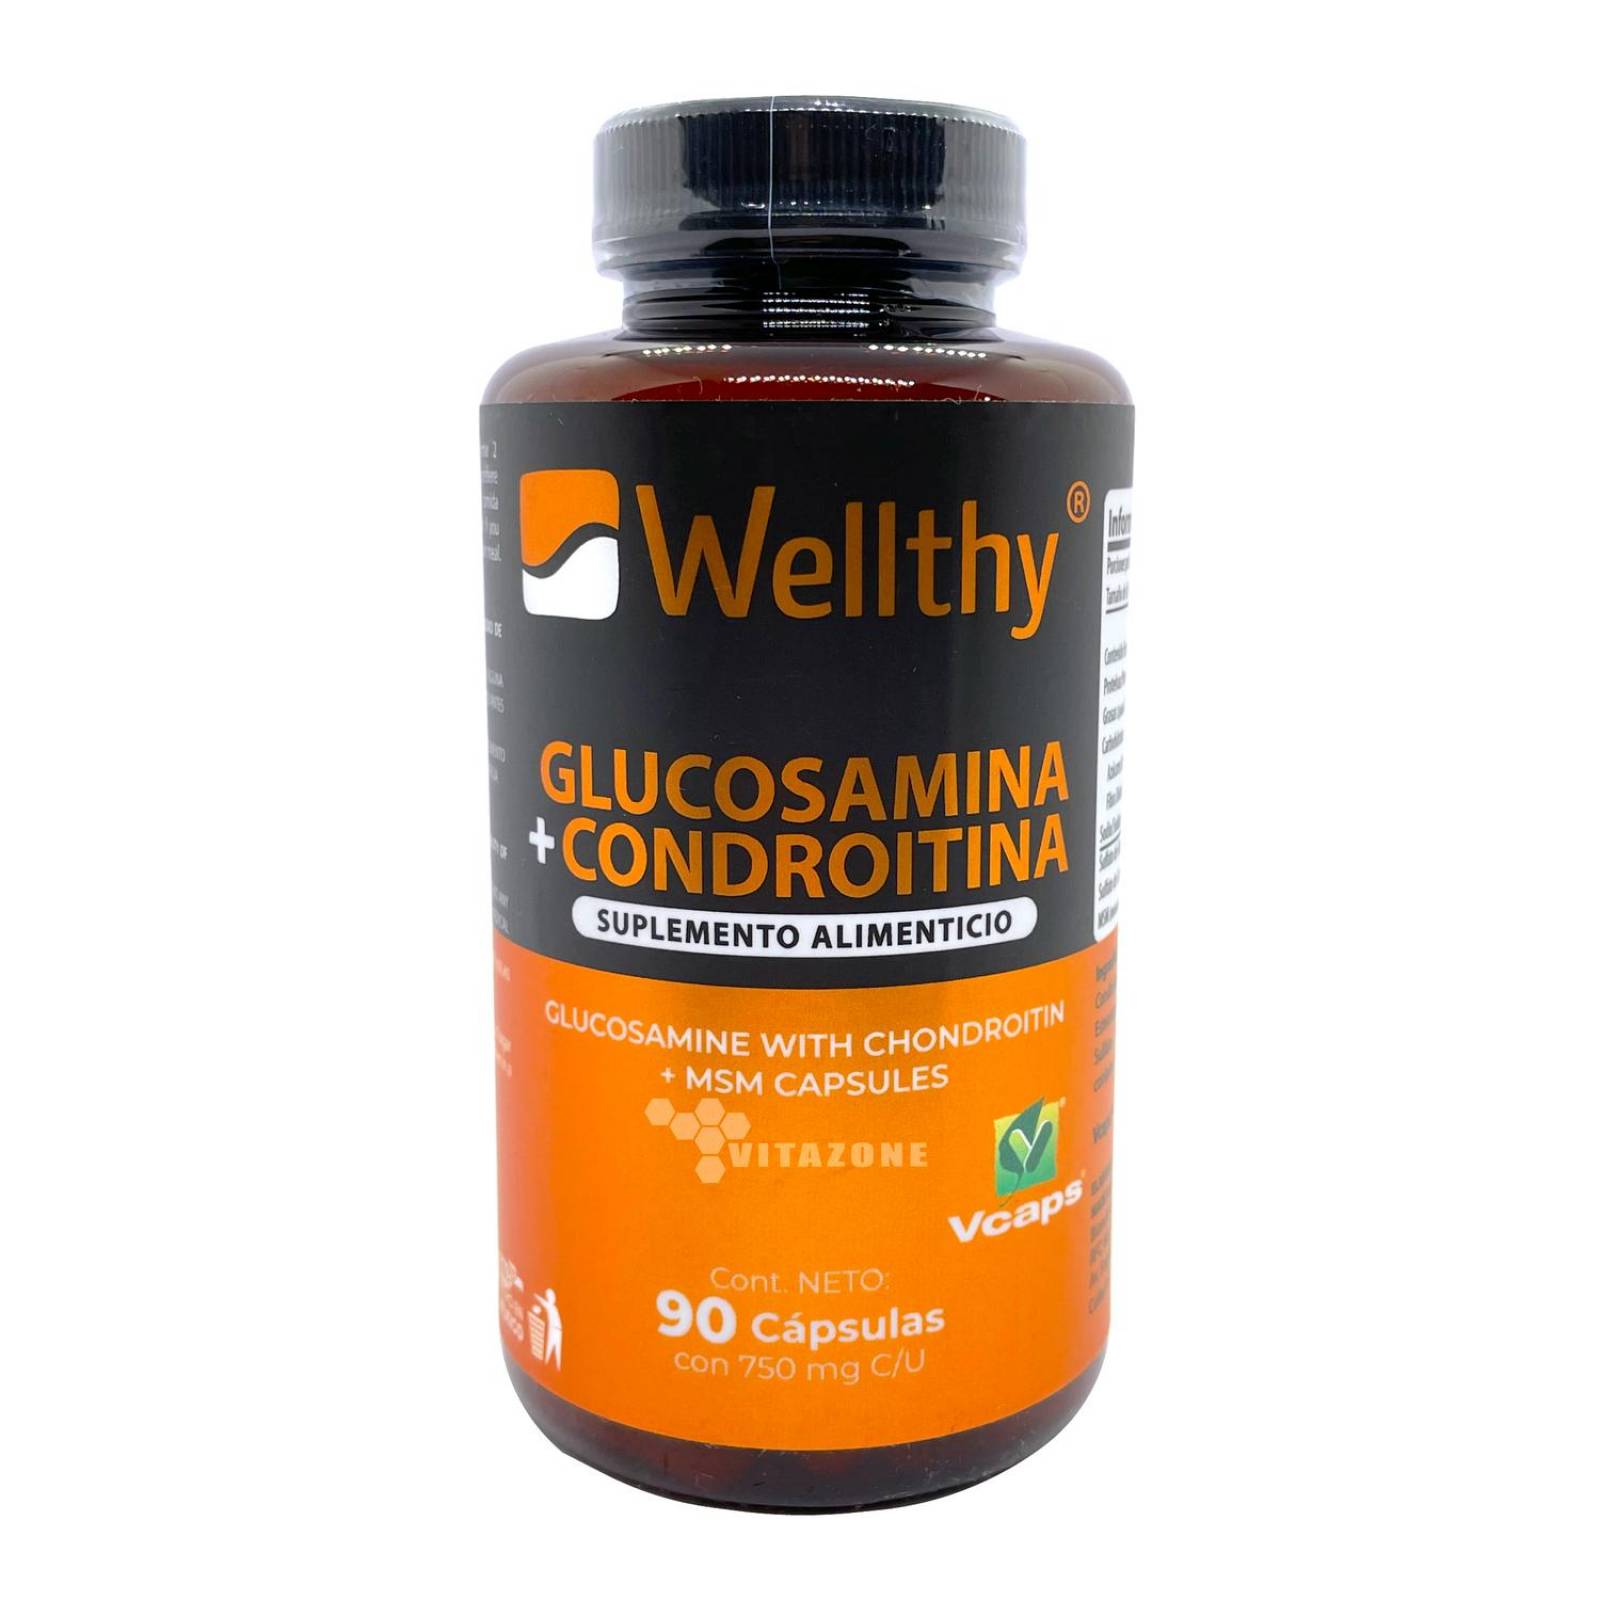 Glucosamina Condroitina y MSM 90 cápsulas Wellthy 